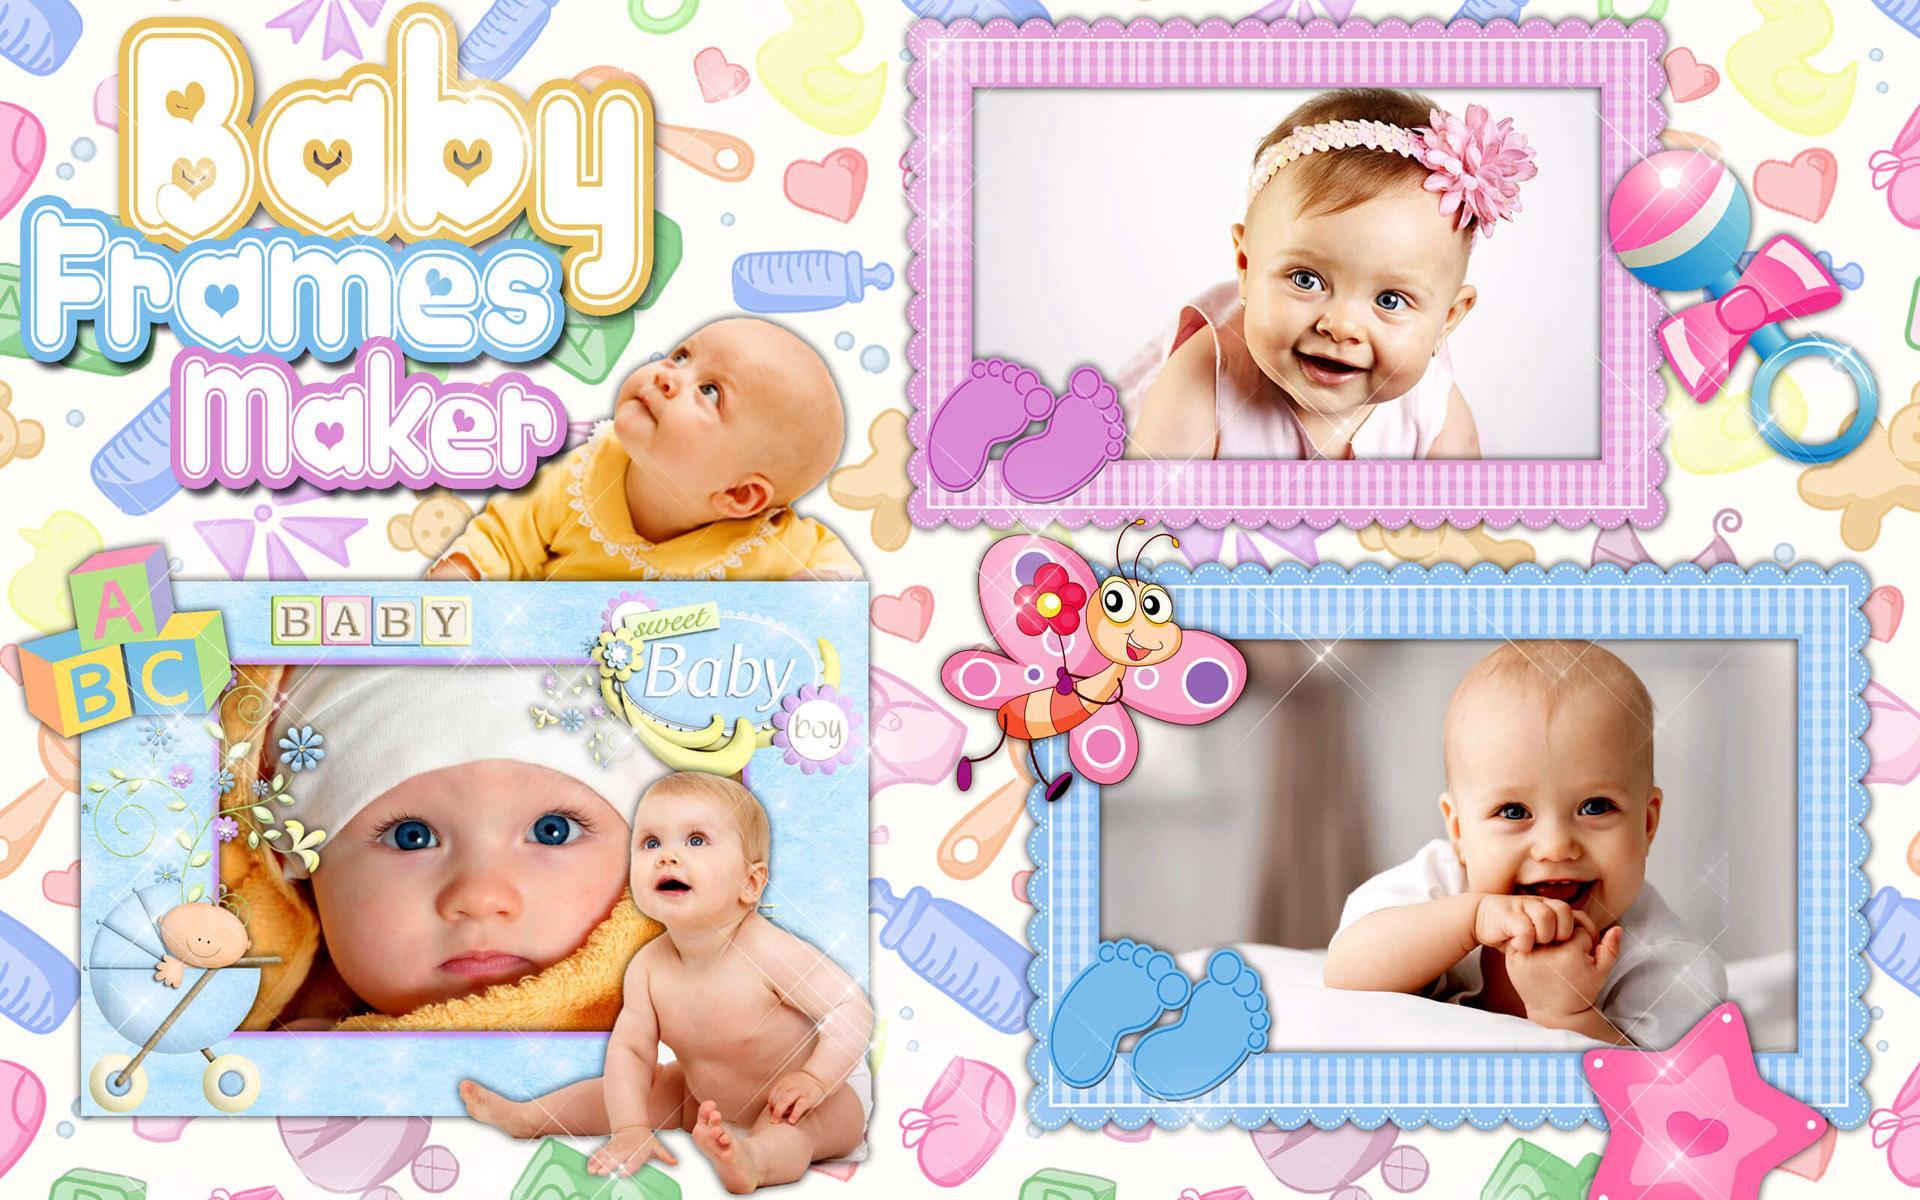 Bingkai Foto Untuk Bayi For Android Apk Download